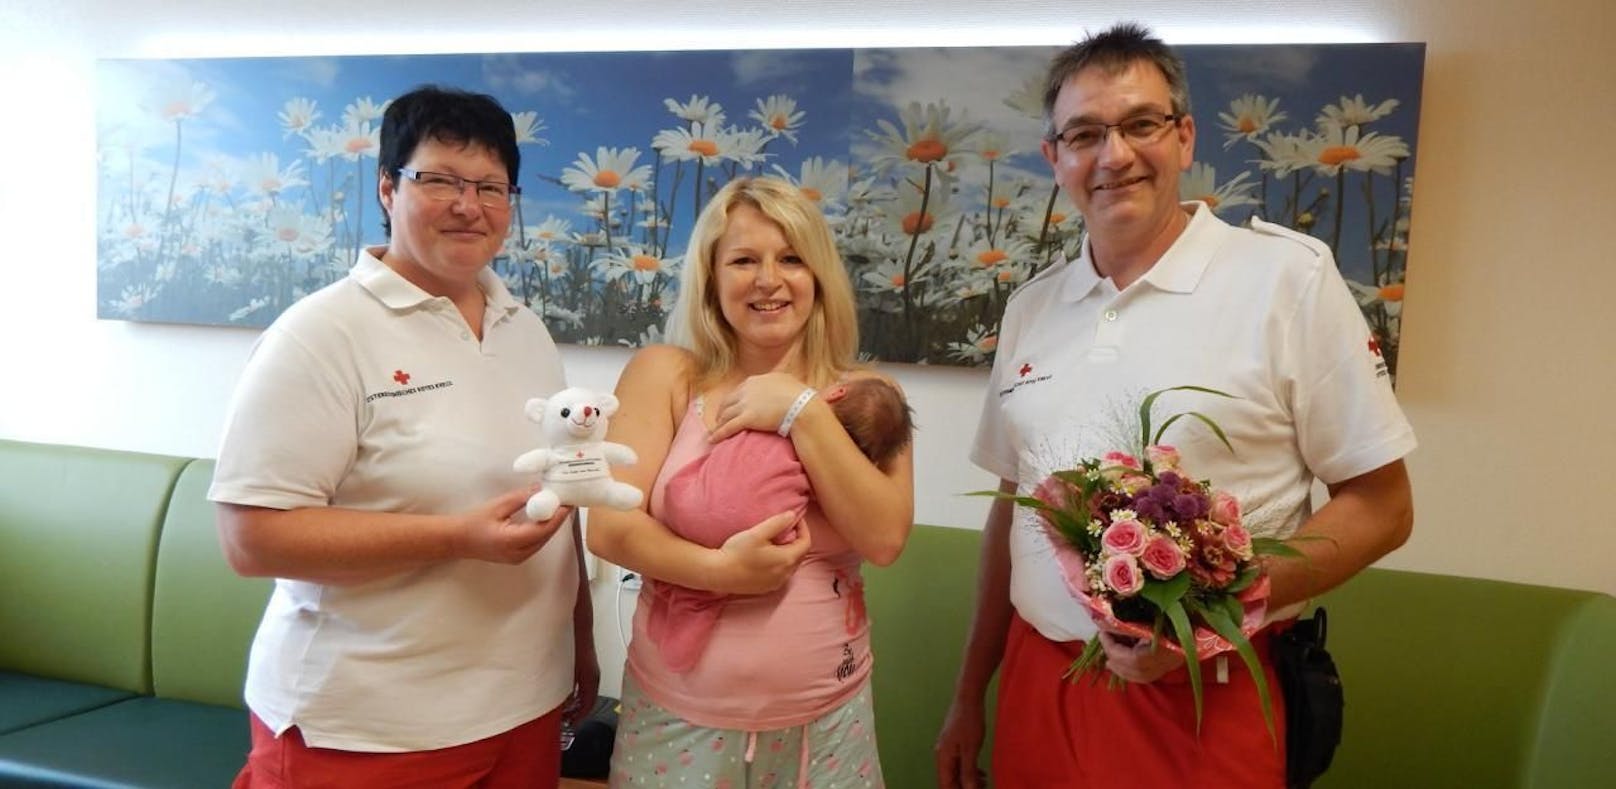 Alles gut gegangen: Martina und Helmut Heindl gratulierten Mama Bettina zur kleinen Lara.